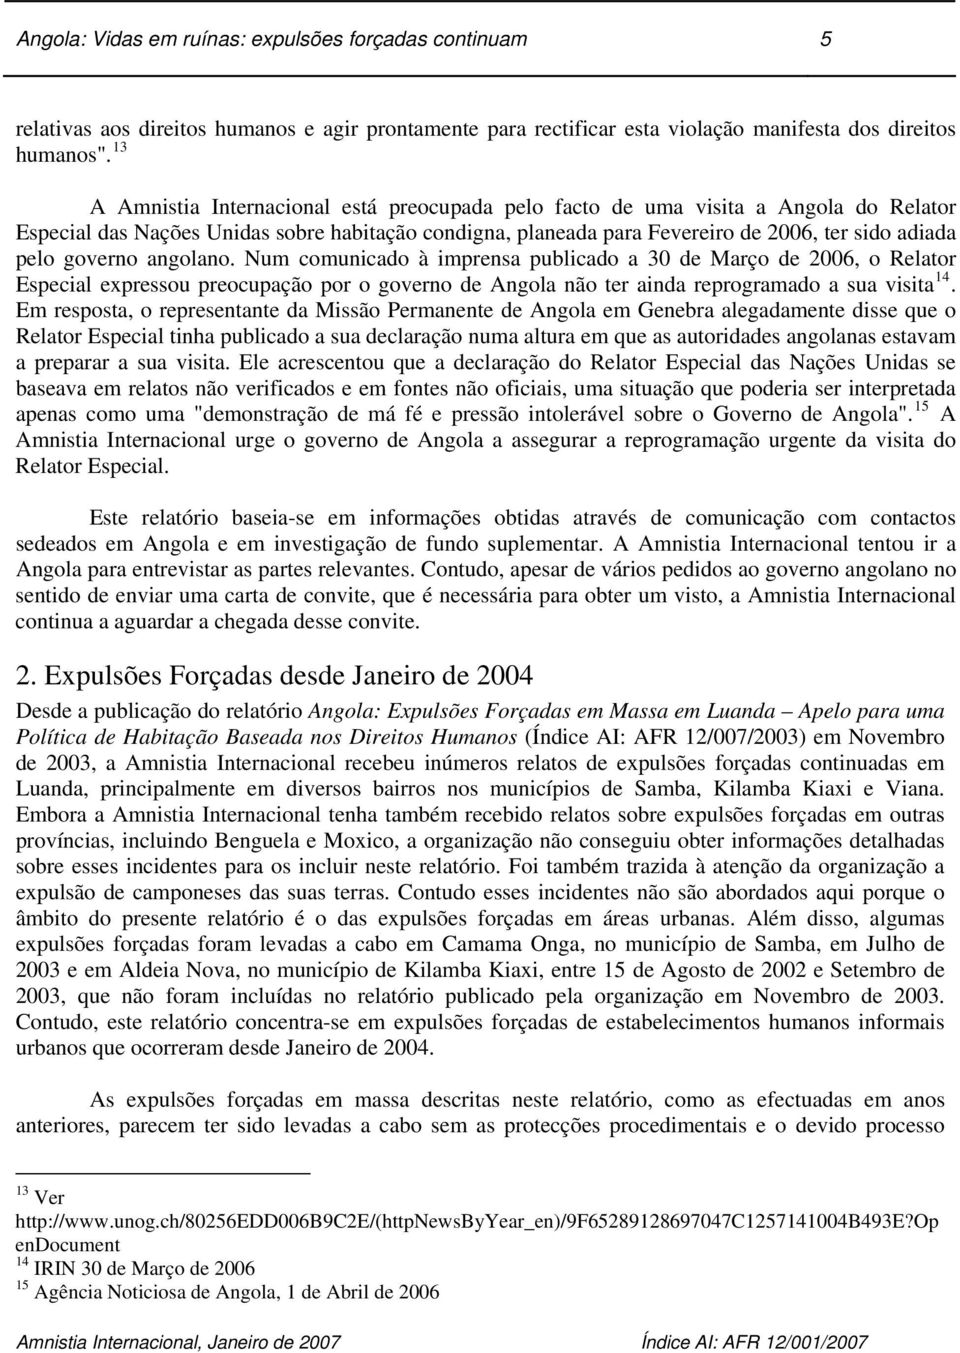 governo angolano. Num comunicado à imprensa publicado a 30 de Março de 2006, o Relator Especial expressou preocupação por o governo de Angola não ter ainda reprogramado a sua visita 14.